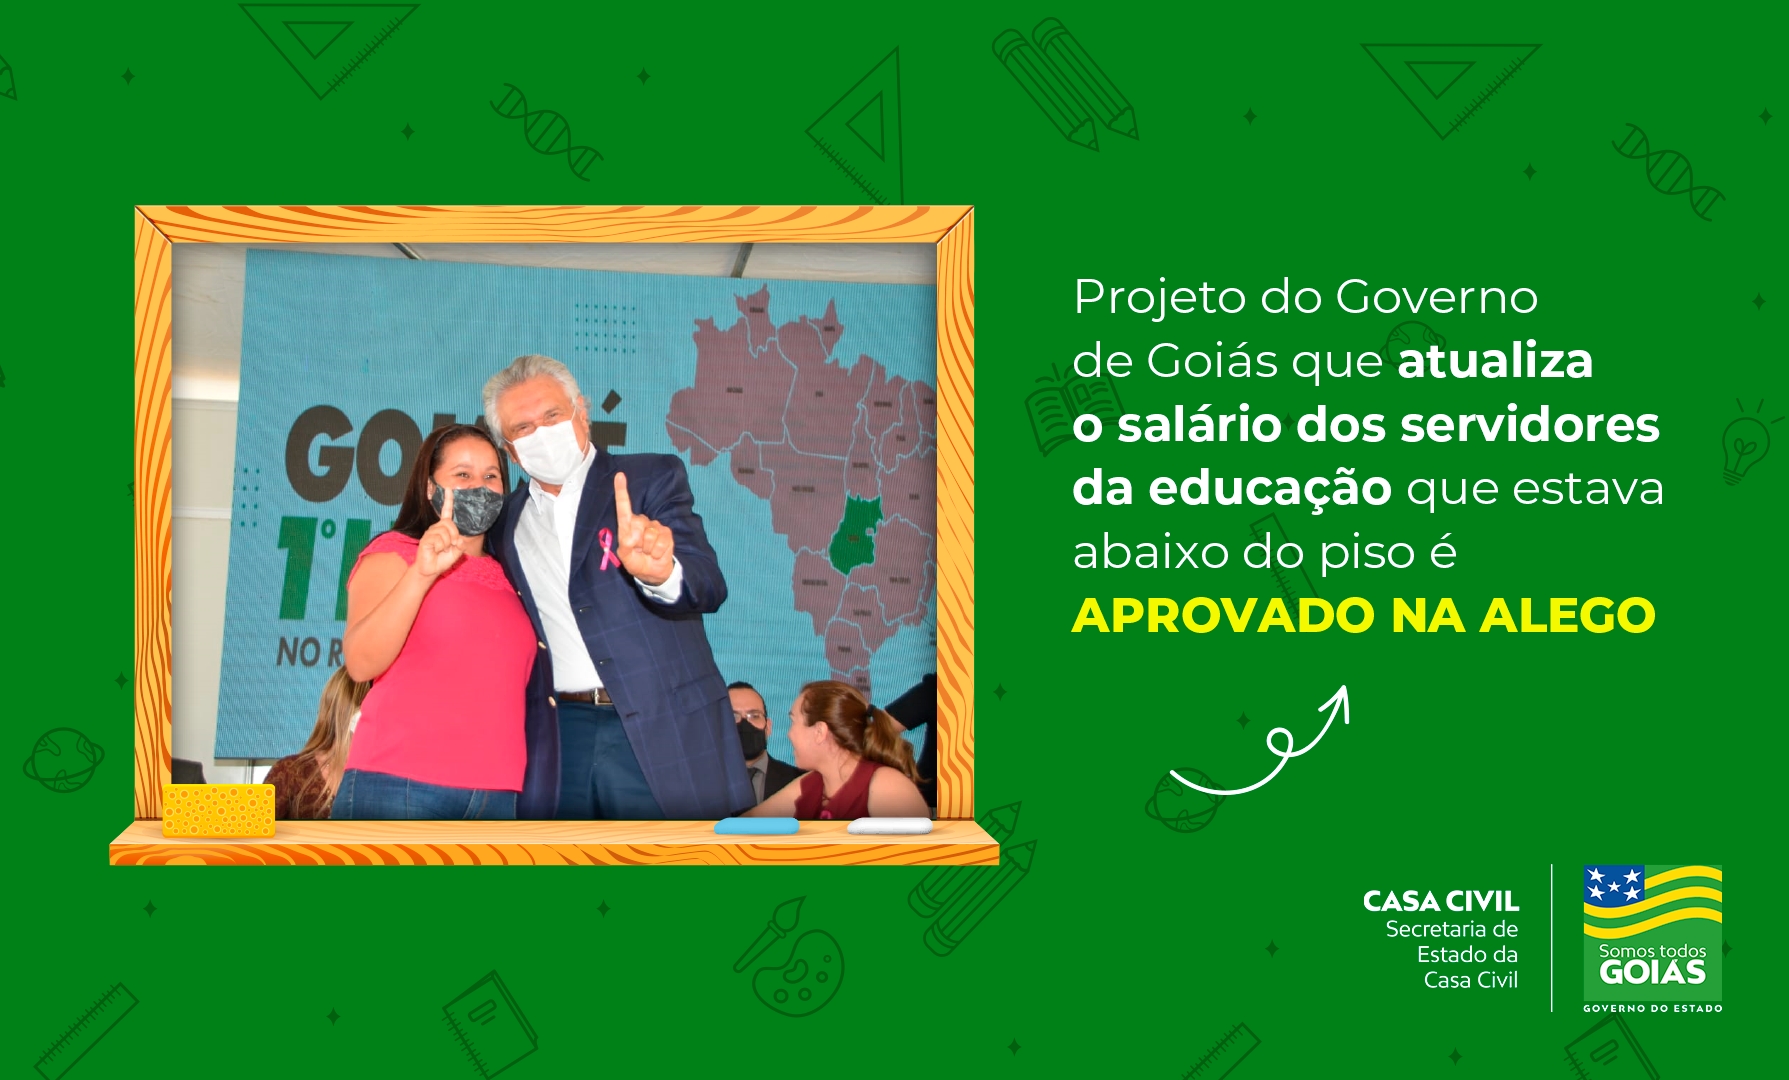 Nesta edição, secretário da Saúde, Ismael Alexandrino, é o convidado especial para falar sobre ações do Governo de Goiás no enfrentamento à pandemia e regionalização da saúde